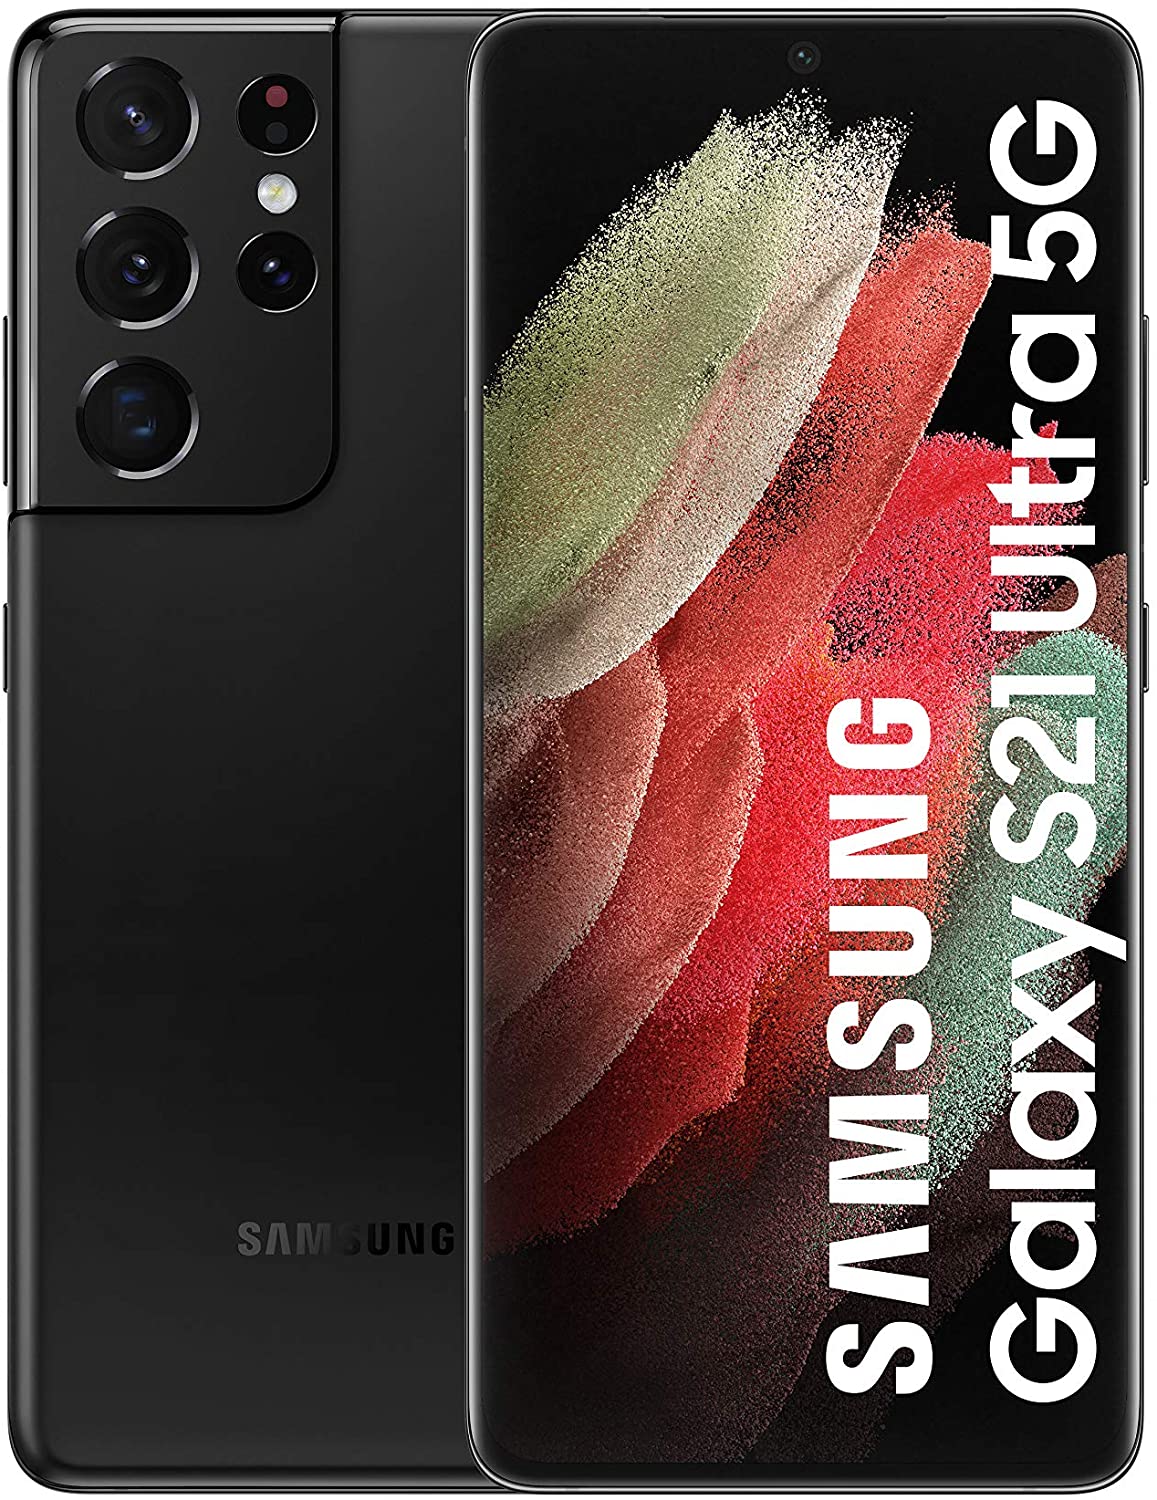 Samsung Galaxy S21 Ultra Amazon